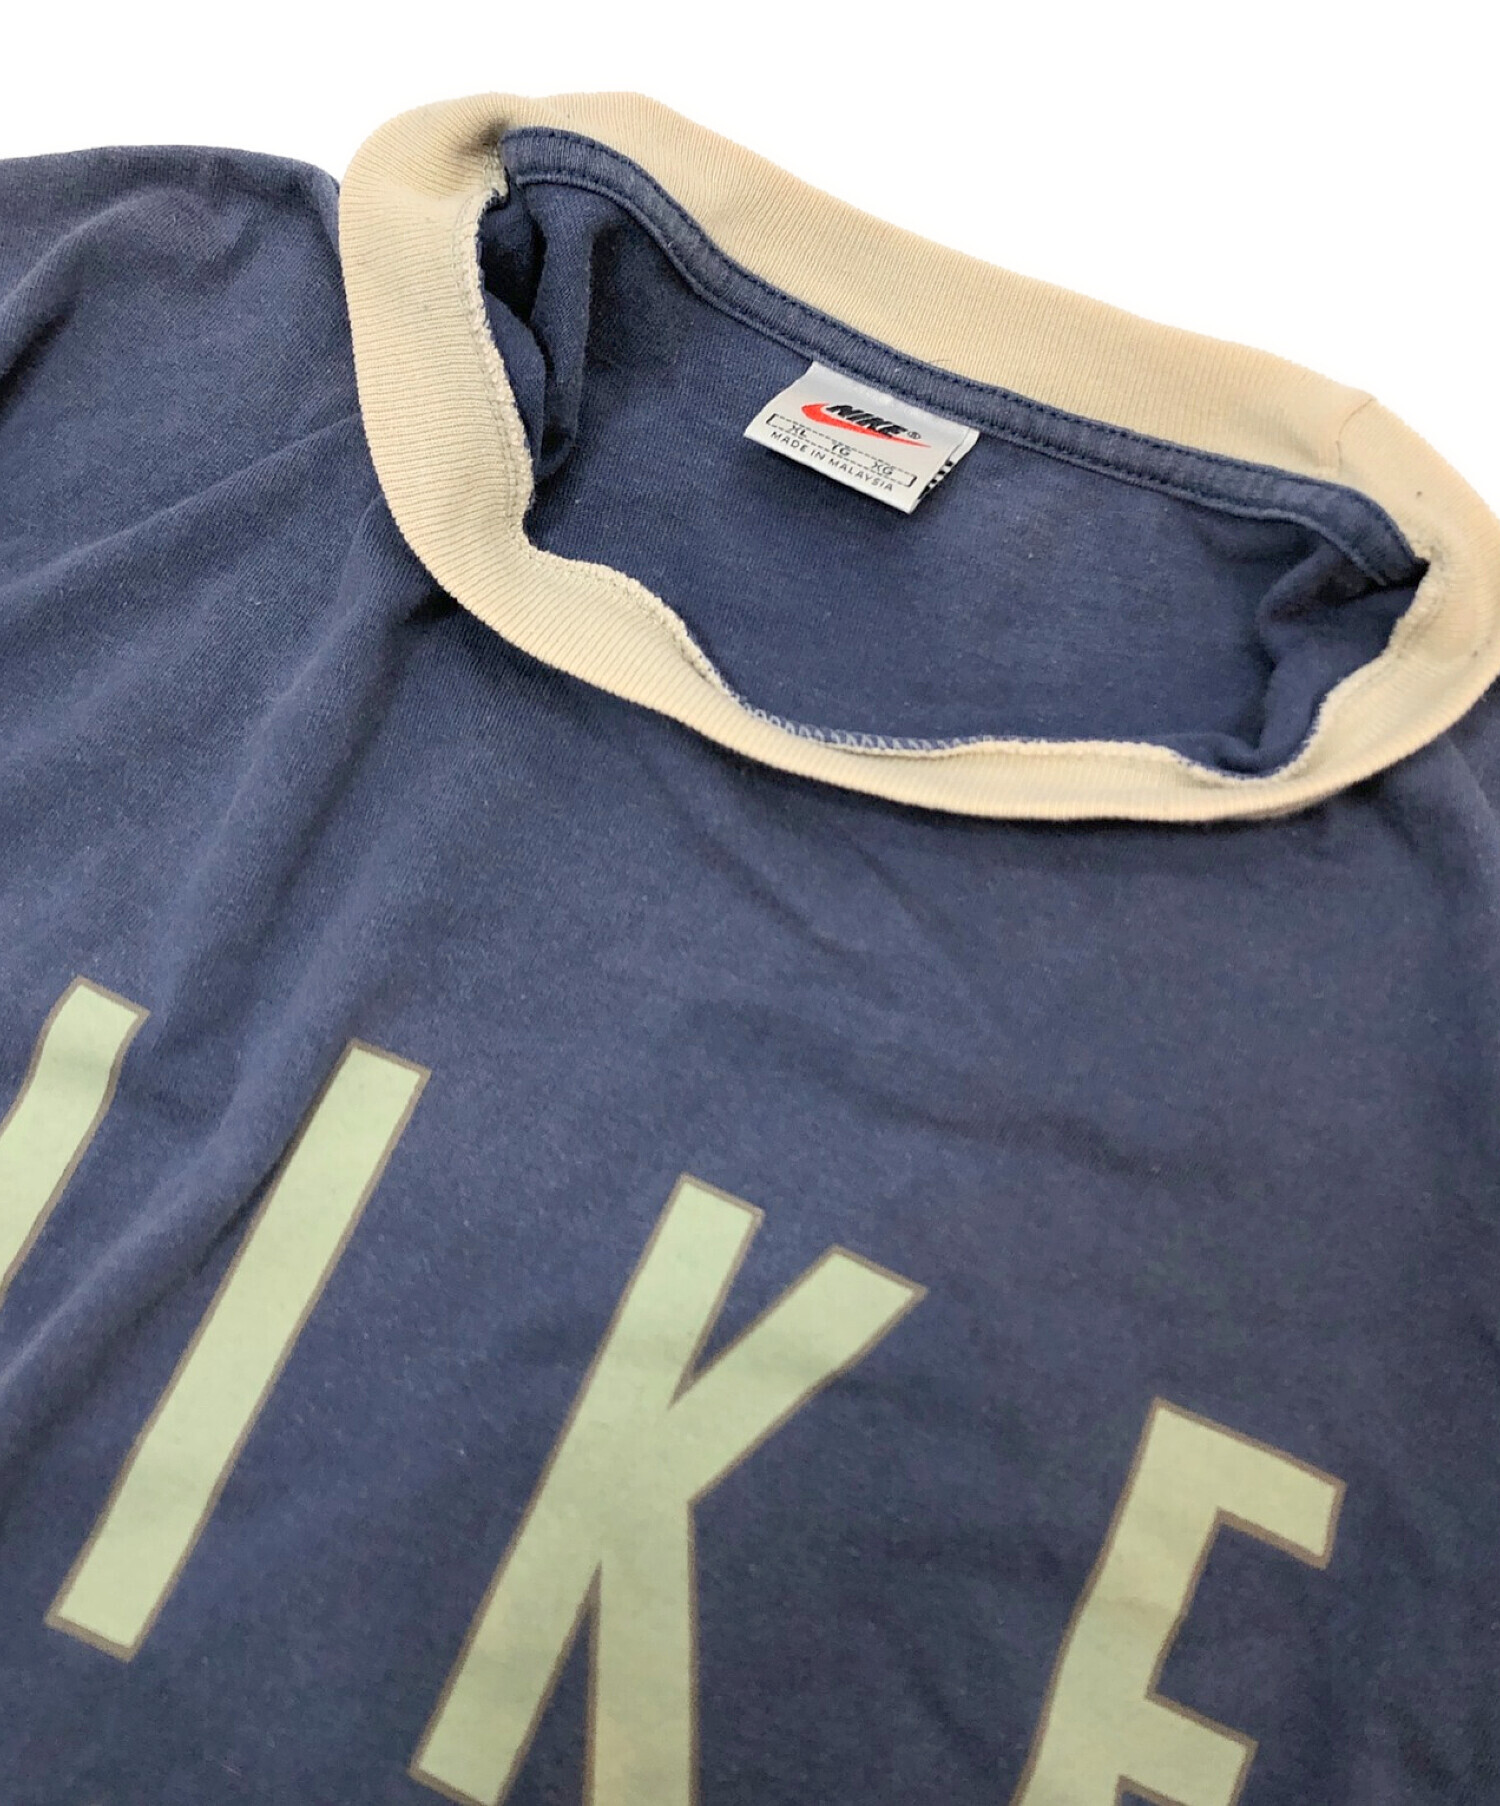 NIKE (ナイキ) 90sデカロゴリンガーTシャツ ネイビー サイズ:XL